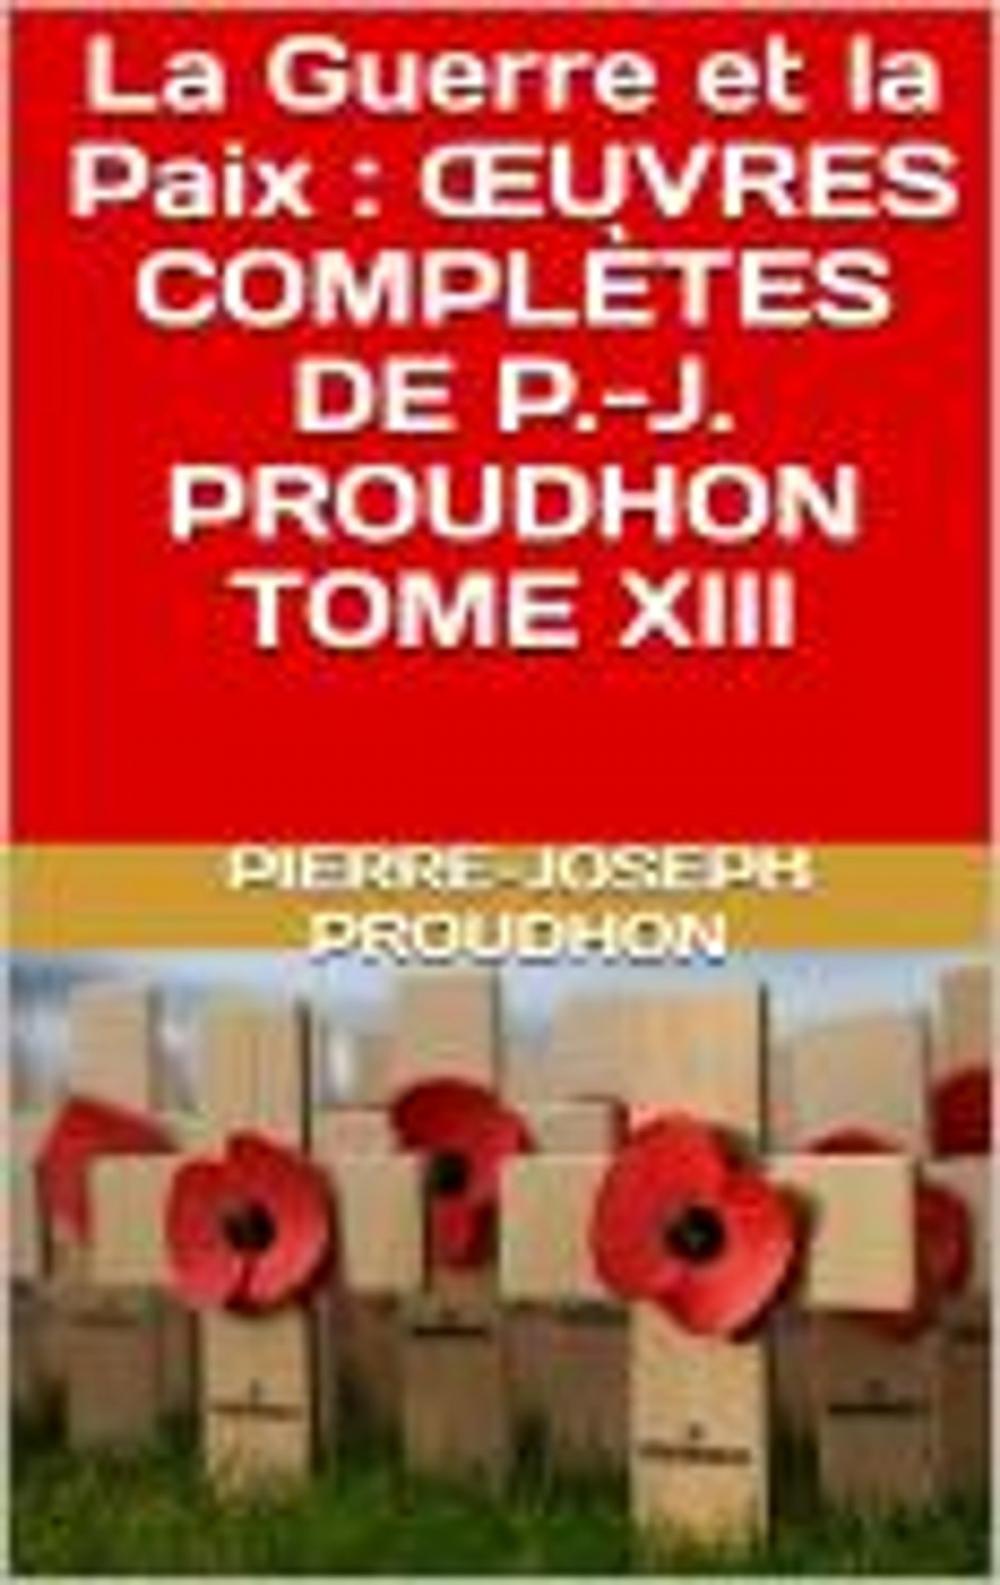 Big bigCover of La Guerre et la Paix : ŒUVRES COMPLÈTES DE P.-J. PROUDHON TOME XIII